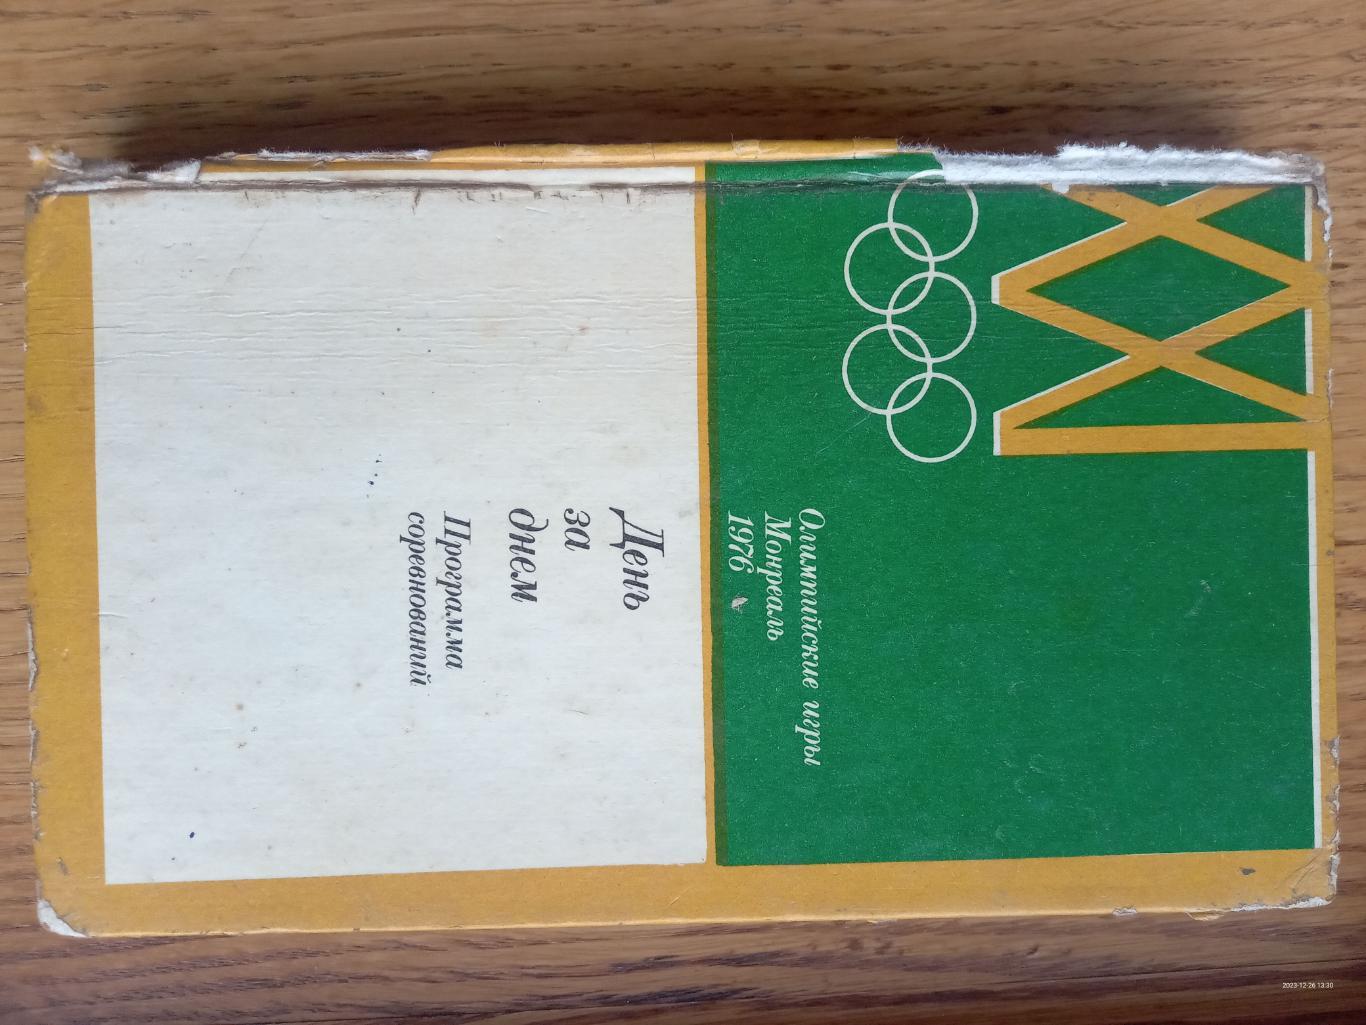 Книга -довідник. Олімпіада -1976. Монреаль.#.м.